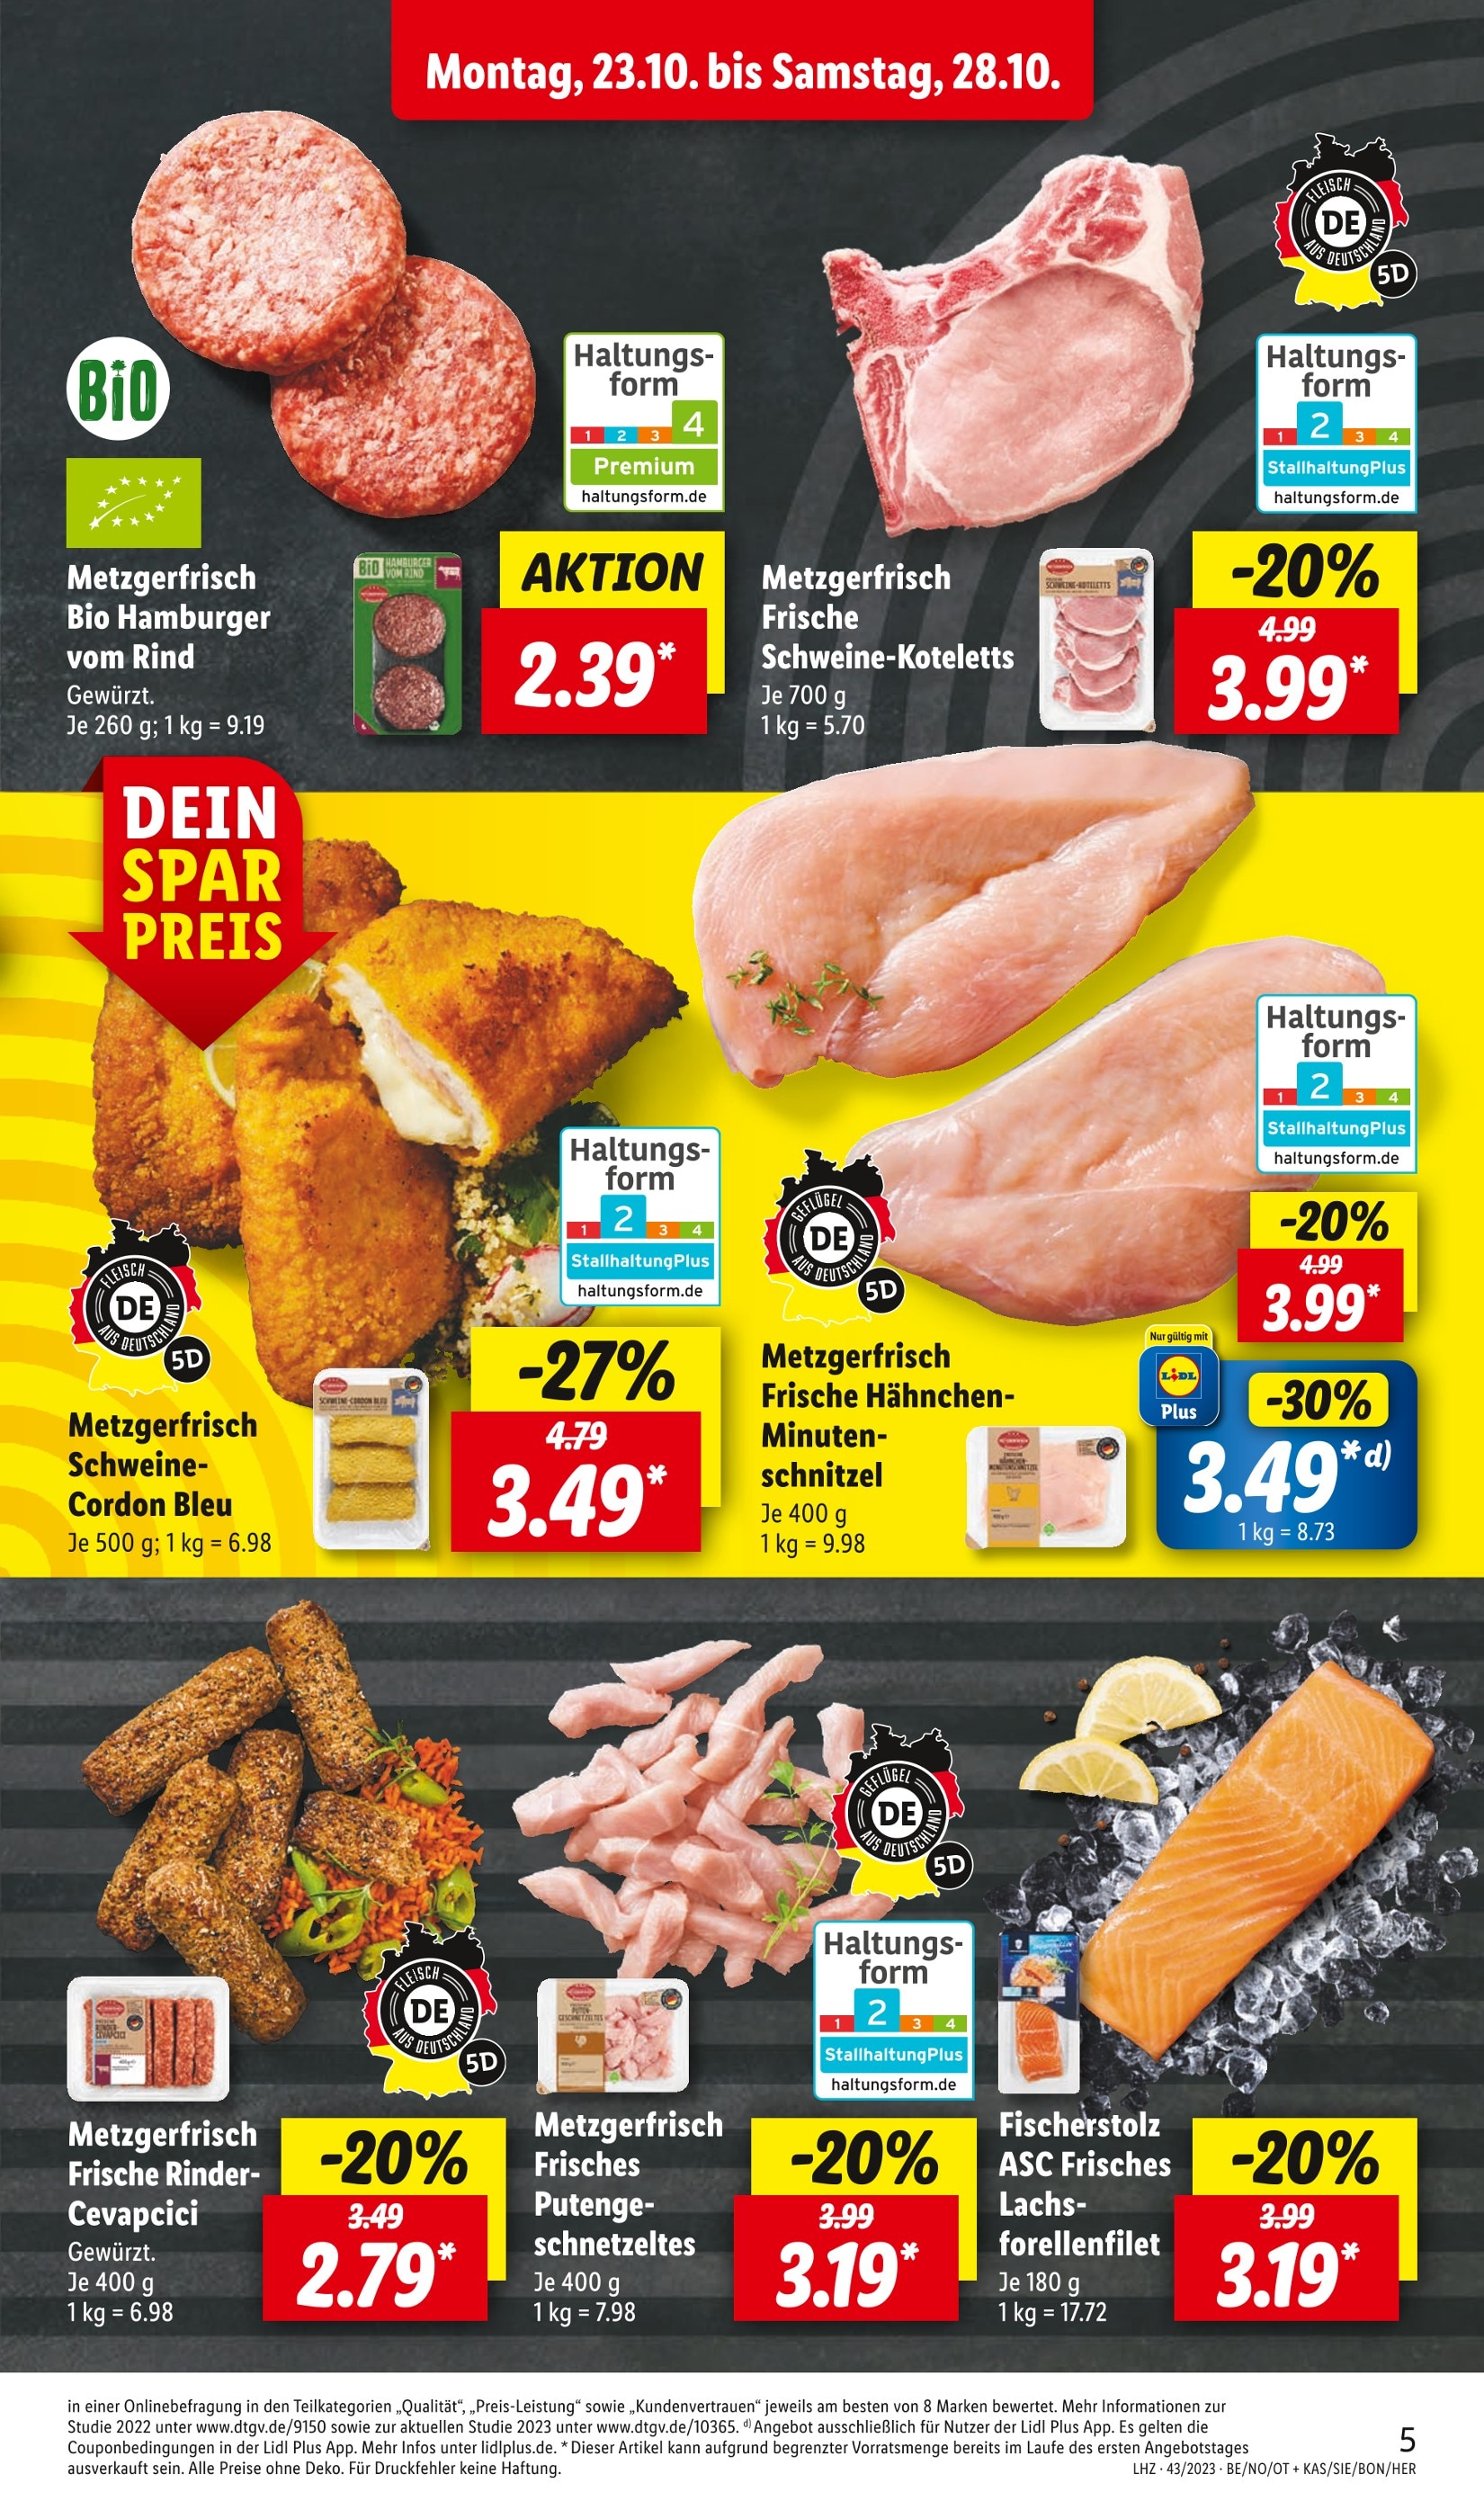 Hackfleisch kaufen in Angebote in - günstige Zwickau Zwickau